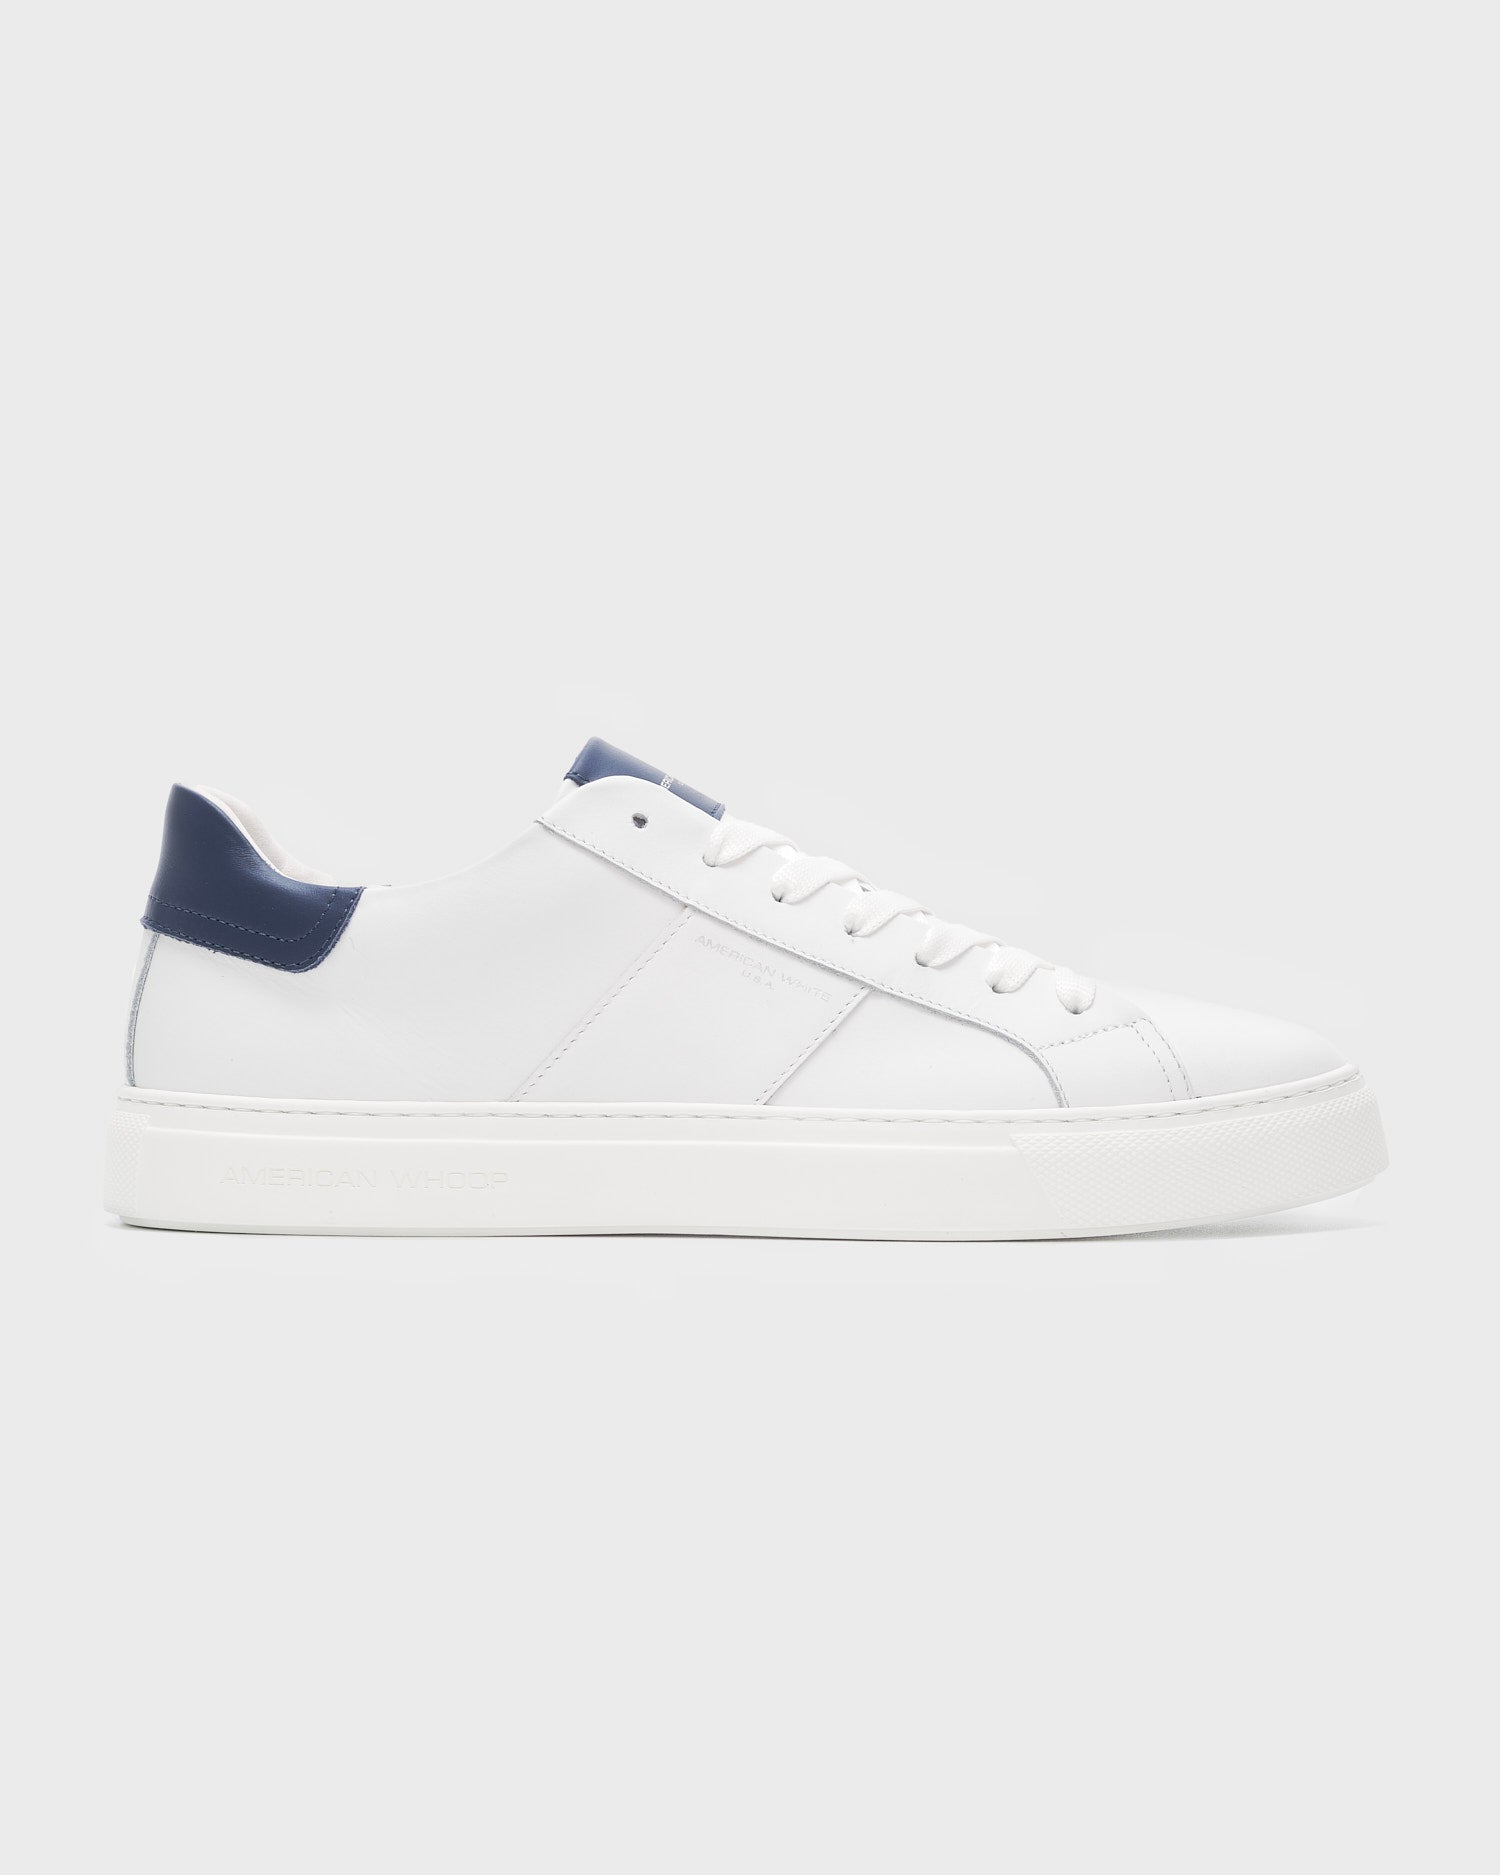 Sneakers American Whoop white & blue